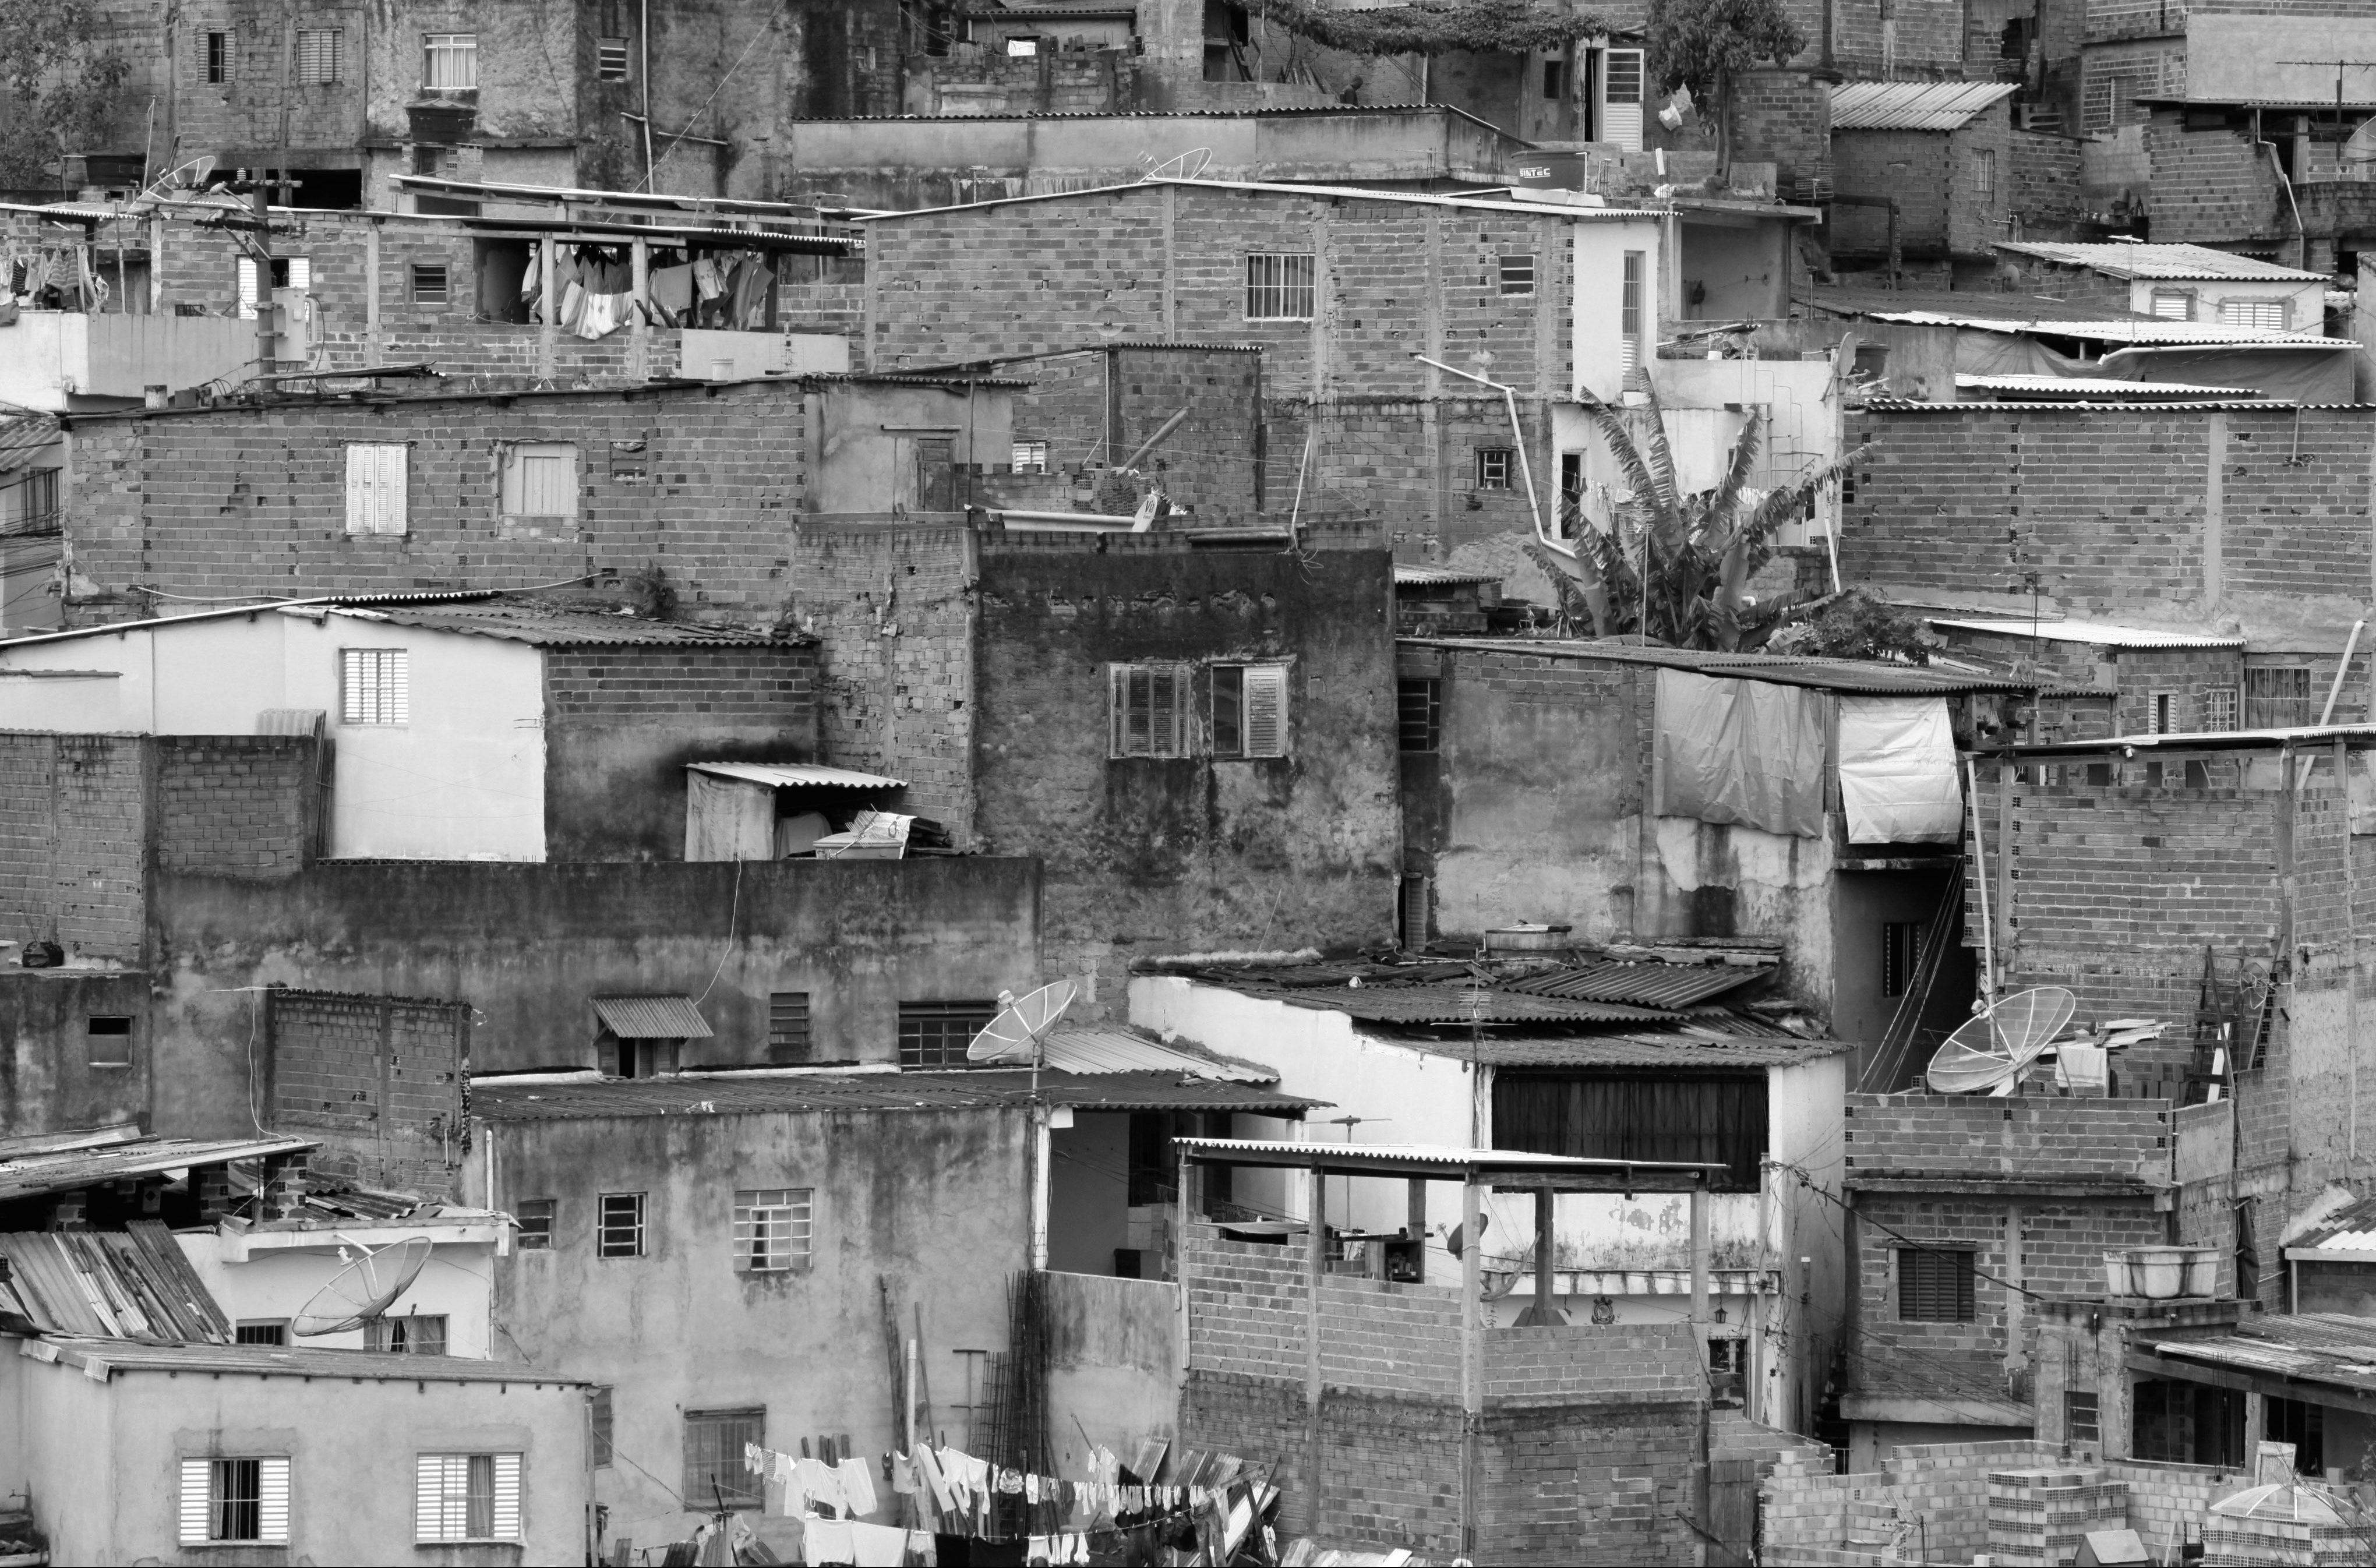 Shacks in the favelas, in Sao Paulo, Brazil